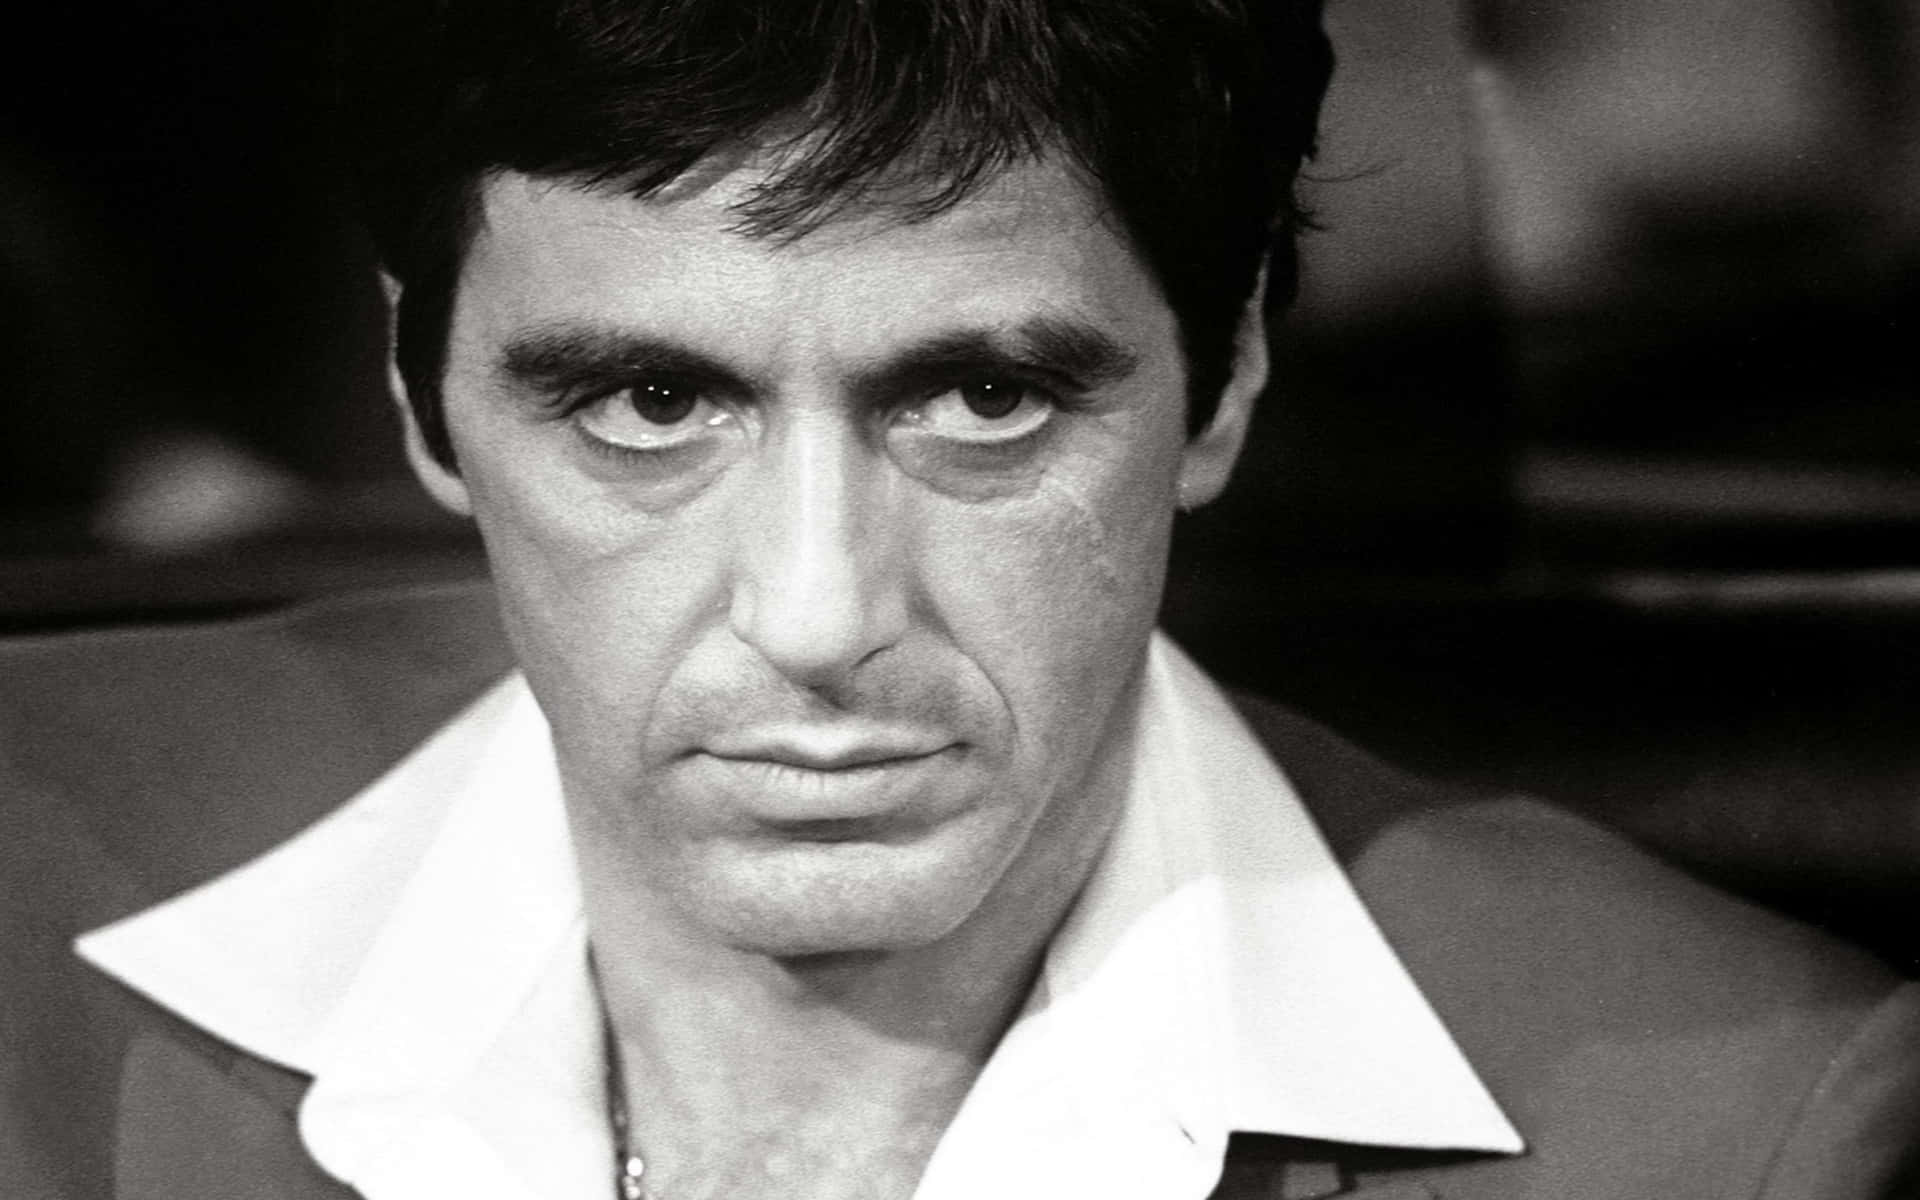 Actorganador Del Premio De La Academia, Al Pacino